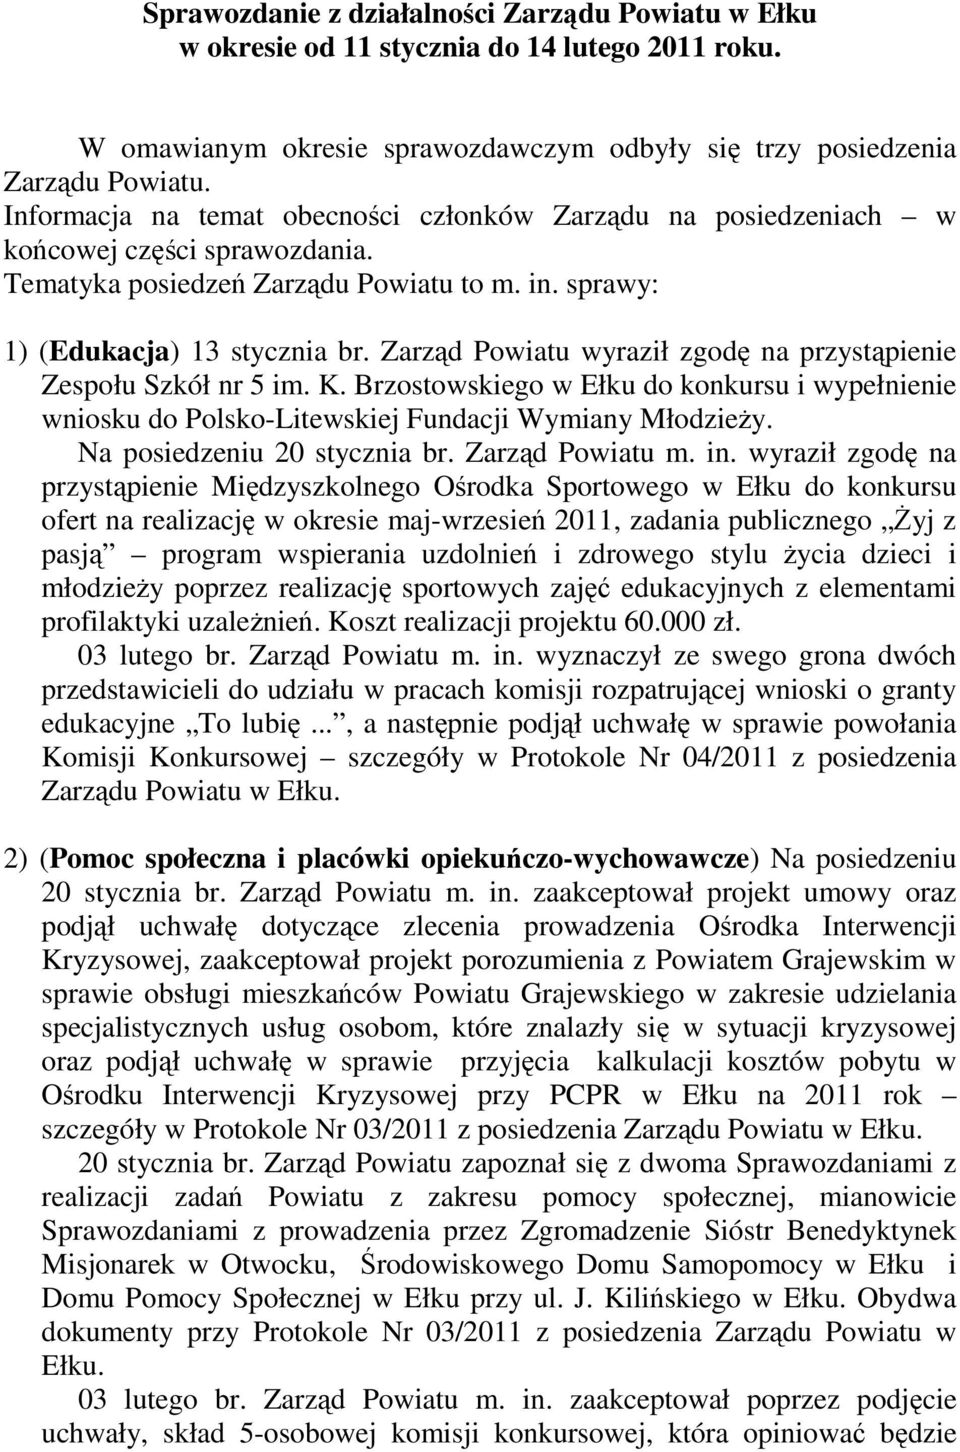 Zarząd Powiatu wyraził zgodę na przystąpienie Zespołu Szkół nr 5 im. K. Brzostowskiego w Ełku do konkursu i wypełnienie wniosku do Polsko-Litewskiej Fundacji Wymiany Młodzieży.